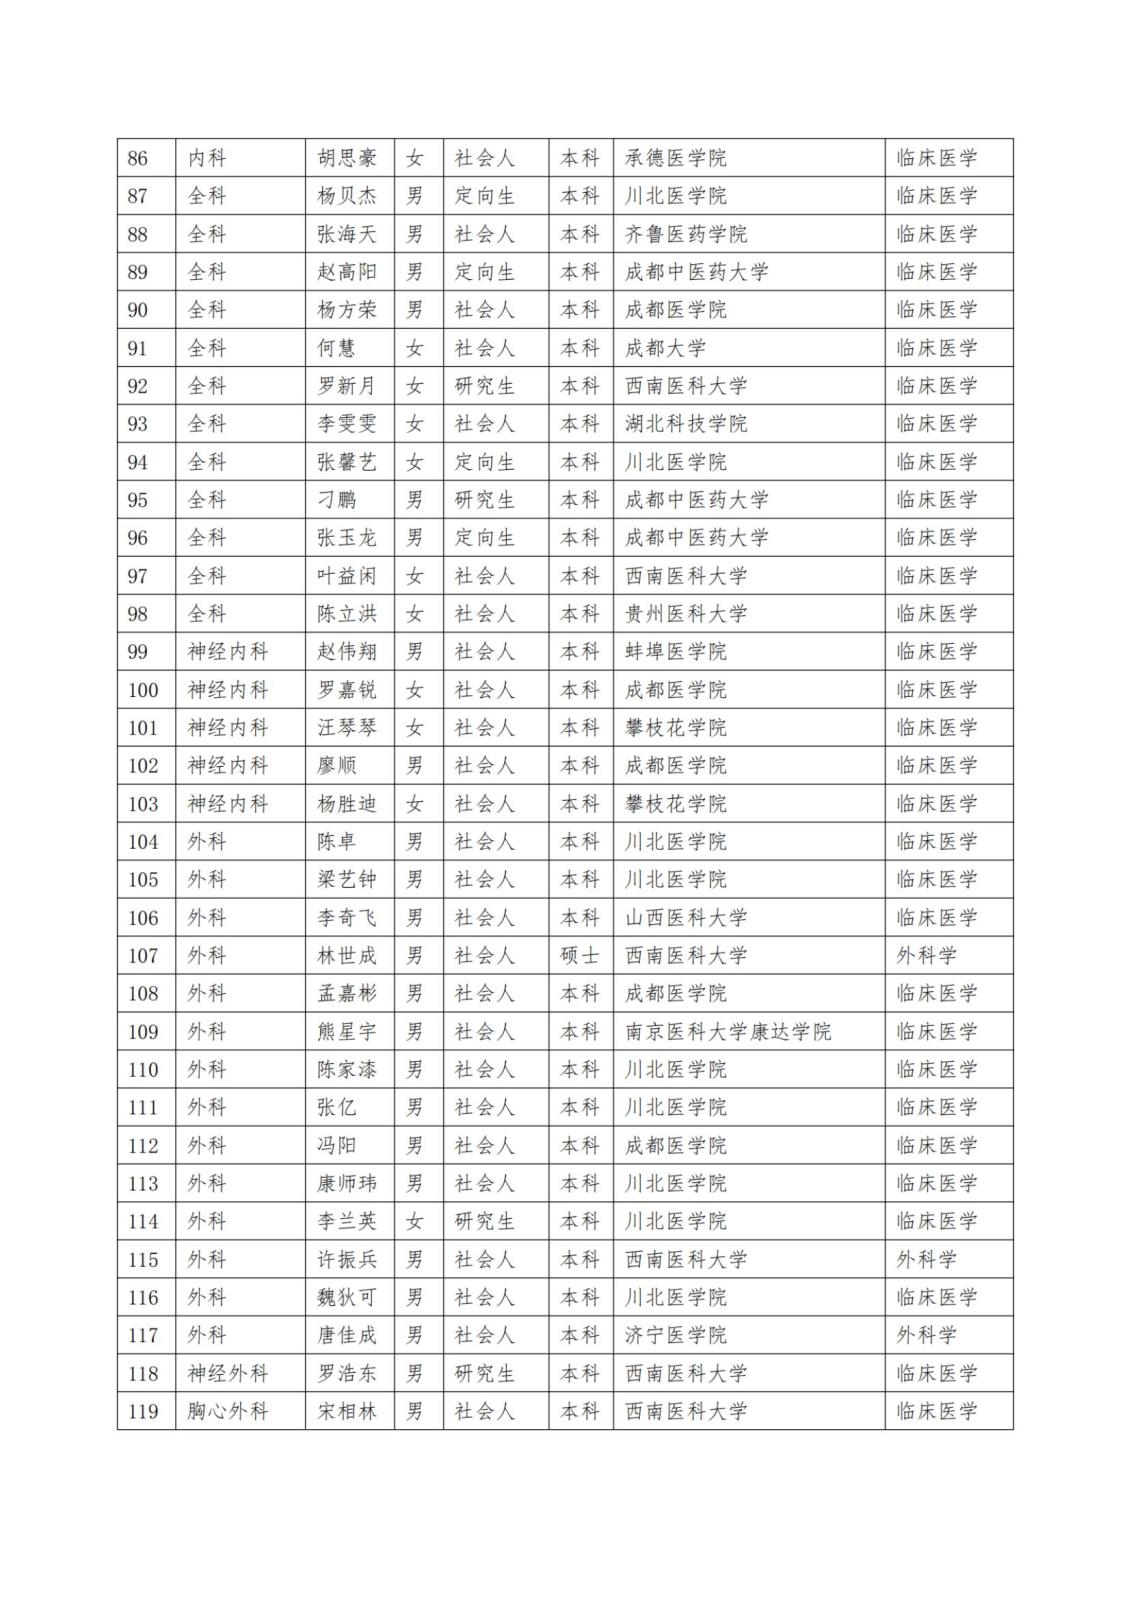 2023级住院医师规范化培训招生录取结果公示_纯图版_03.jpg